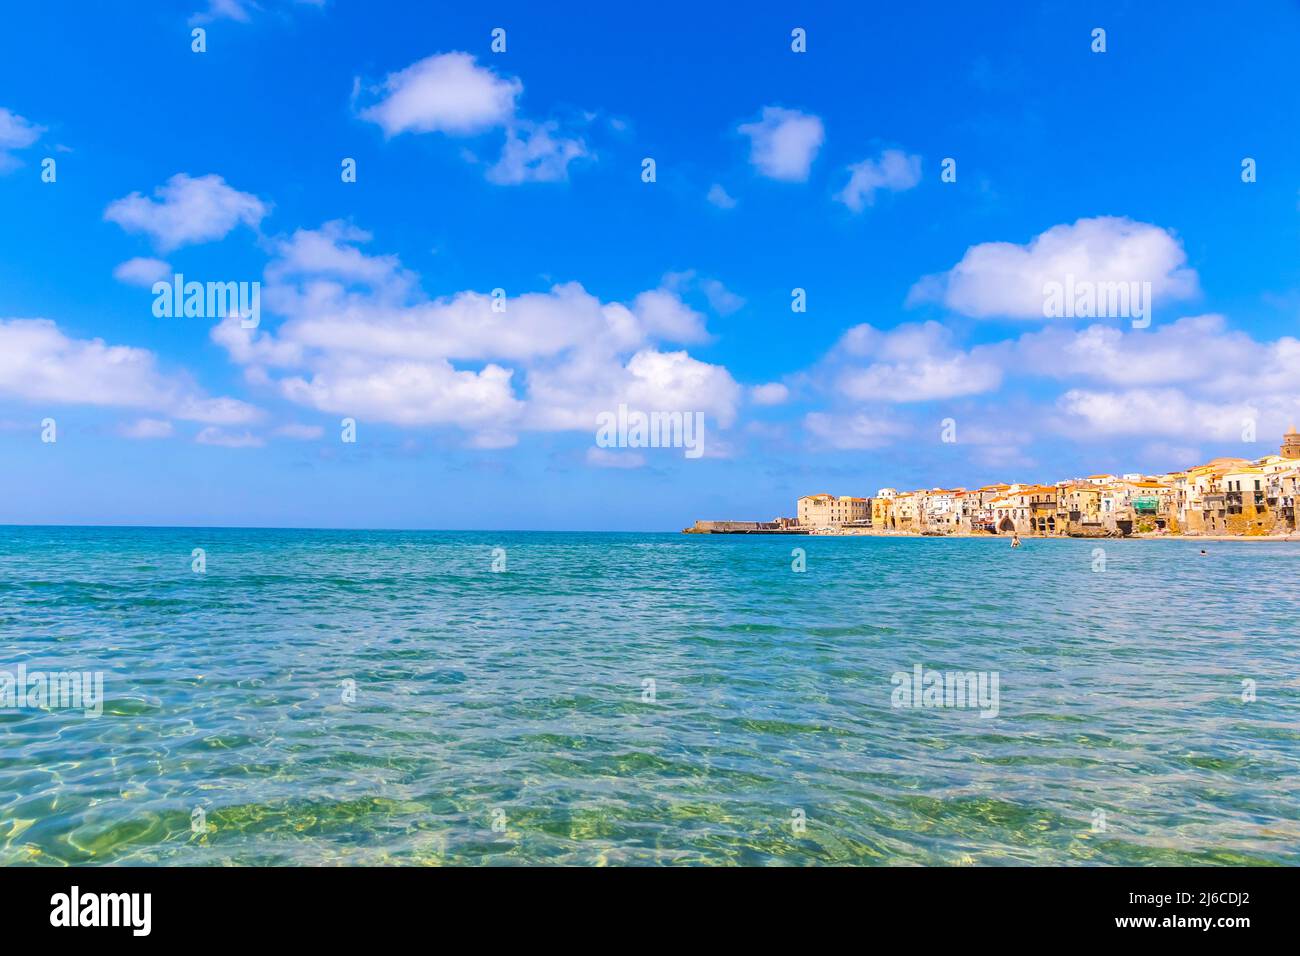 Vue sur la plage de Cefalu, la ville de Cefalu, la Sicile, l'Italie. Cefalu a une longue et belle plage avec du sable propre et doré. Est l'un des meilleurs de Sicile Banque D'Images